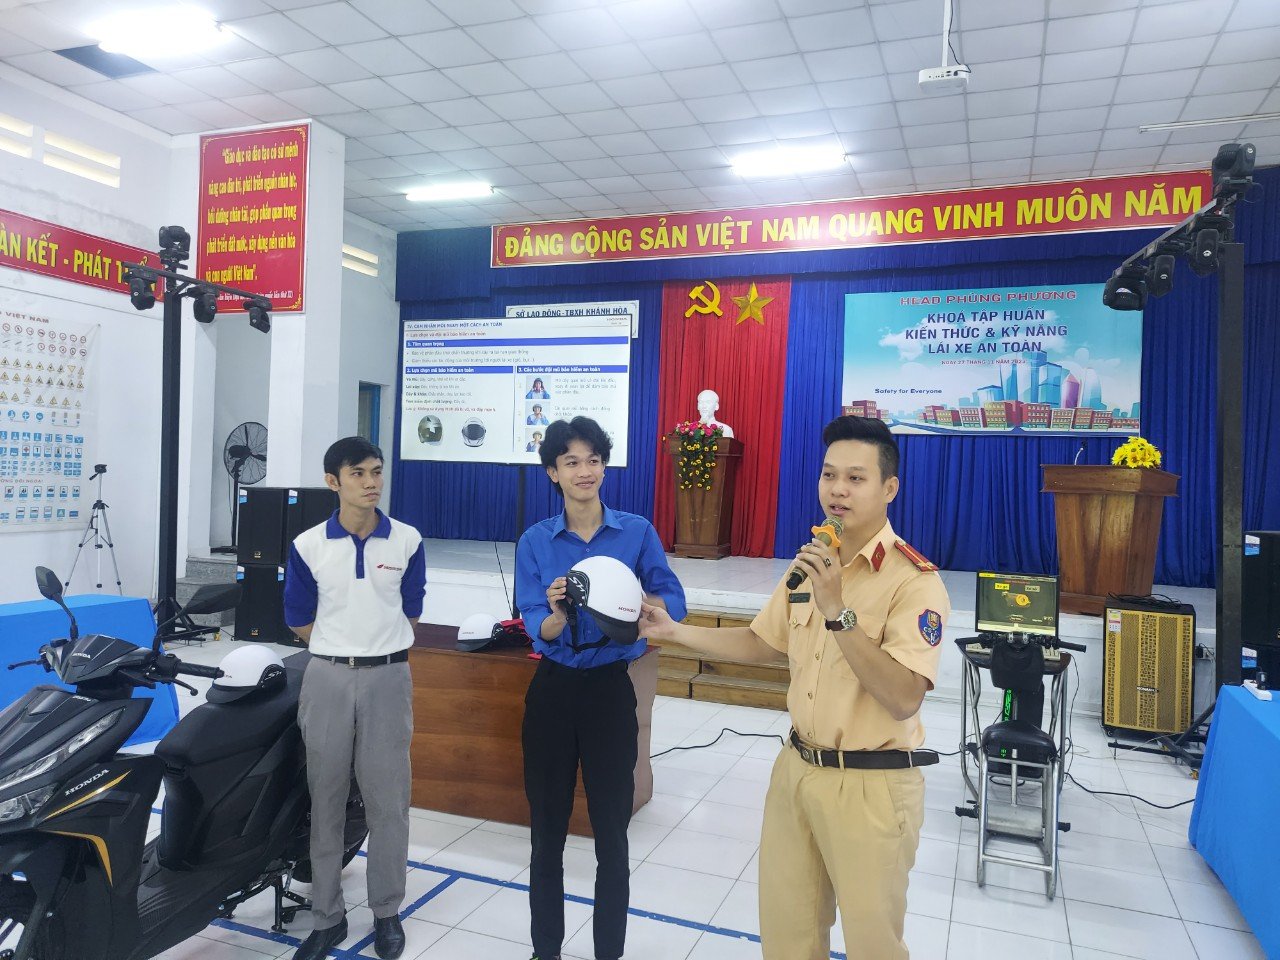 Trường Trung cấp nghề Vạn Ninh tổ chức tập huấn kiến thức và kỹ năng lái xe an toàn 